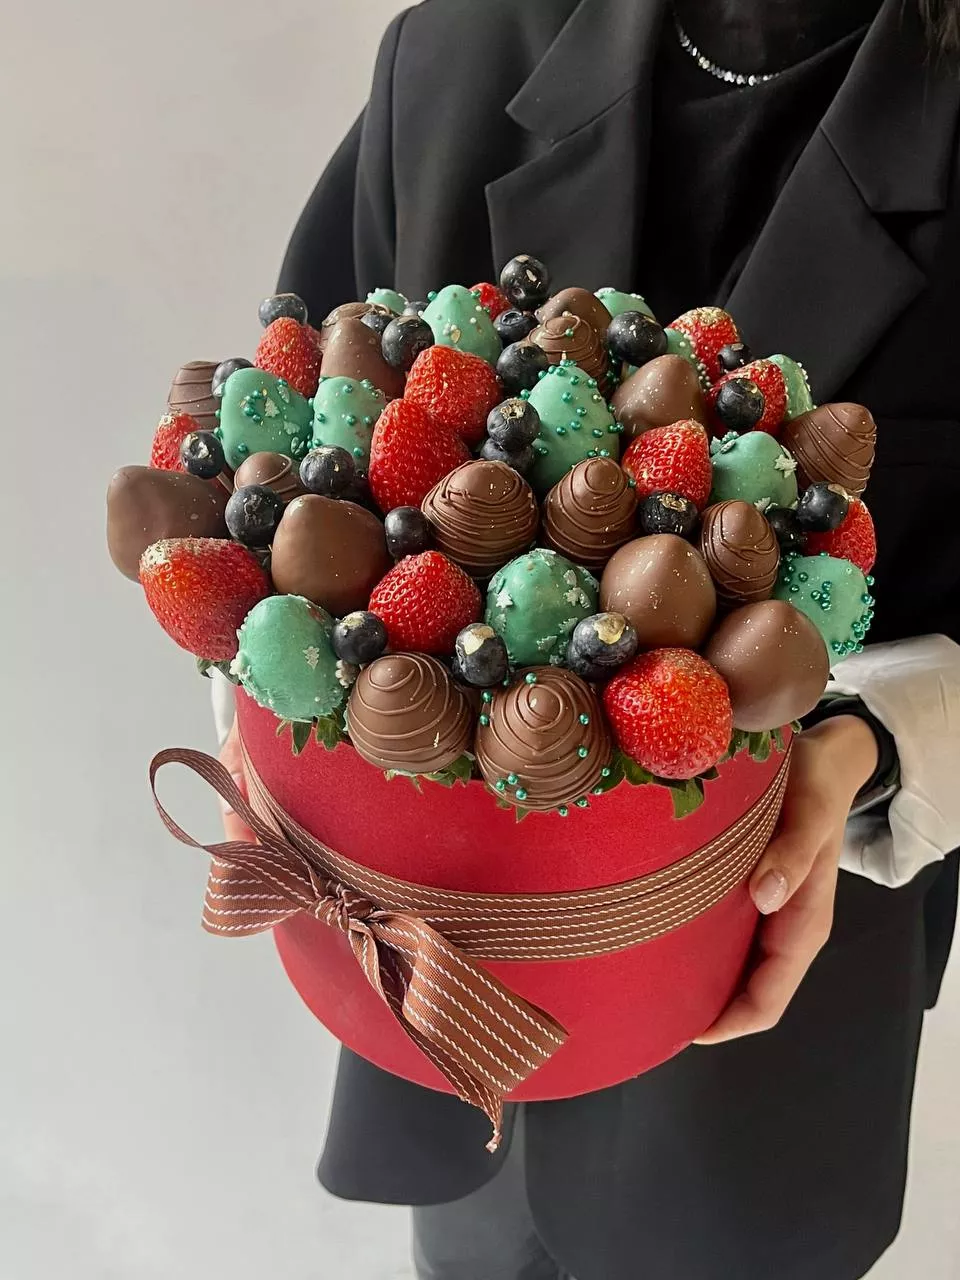 Клубничный бокс "Рождество" с клубникой в шоколаде, голубикой и свежей клубникой